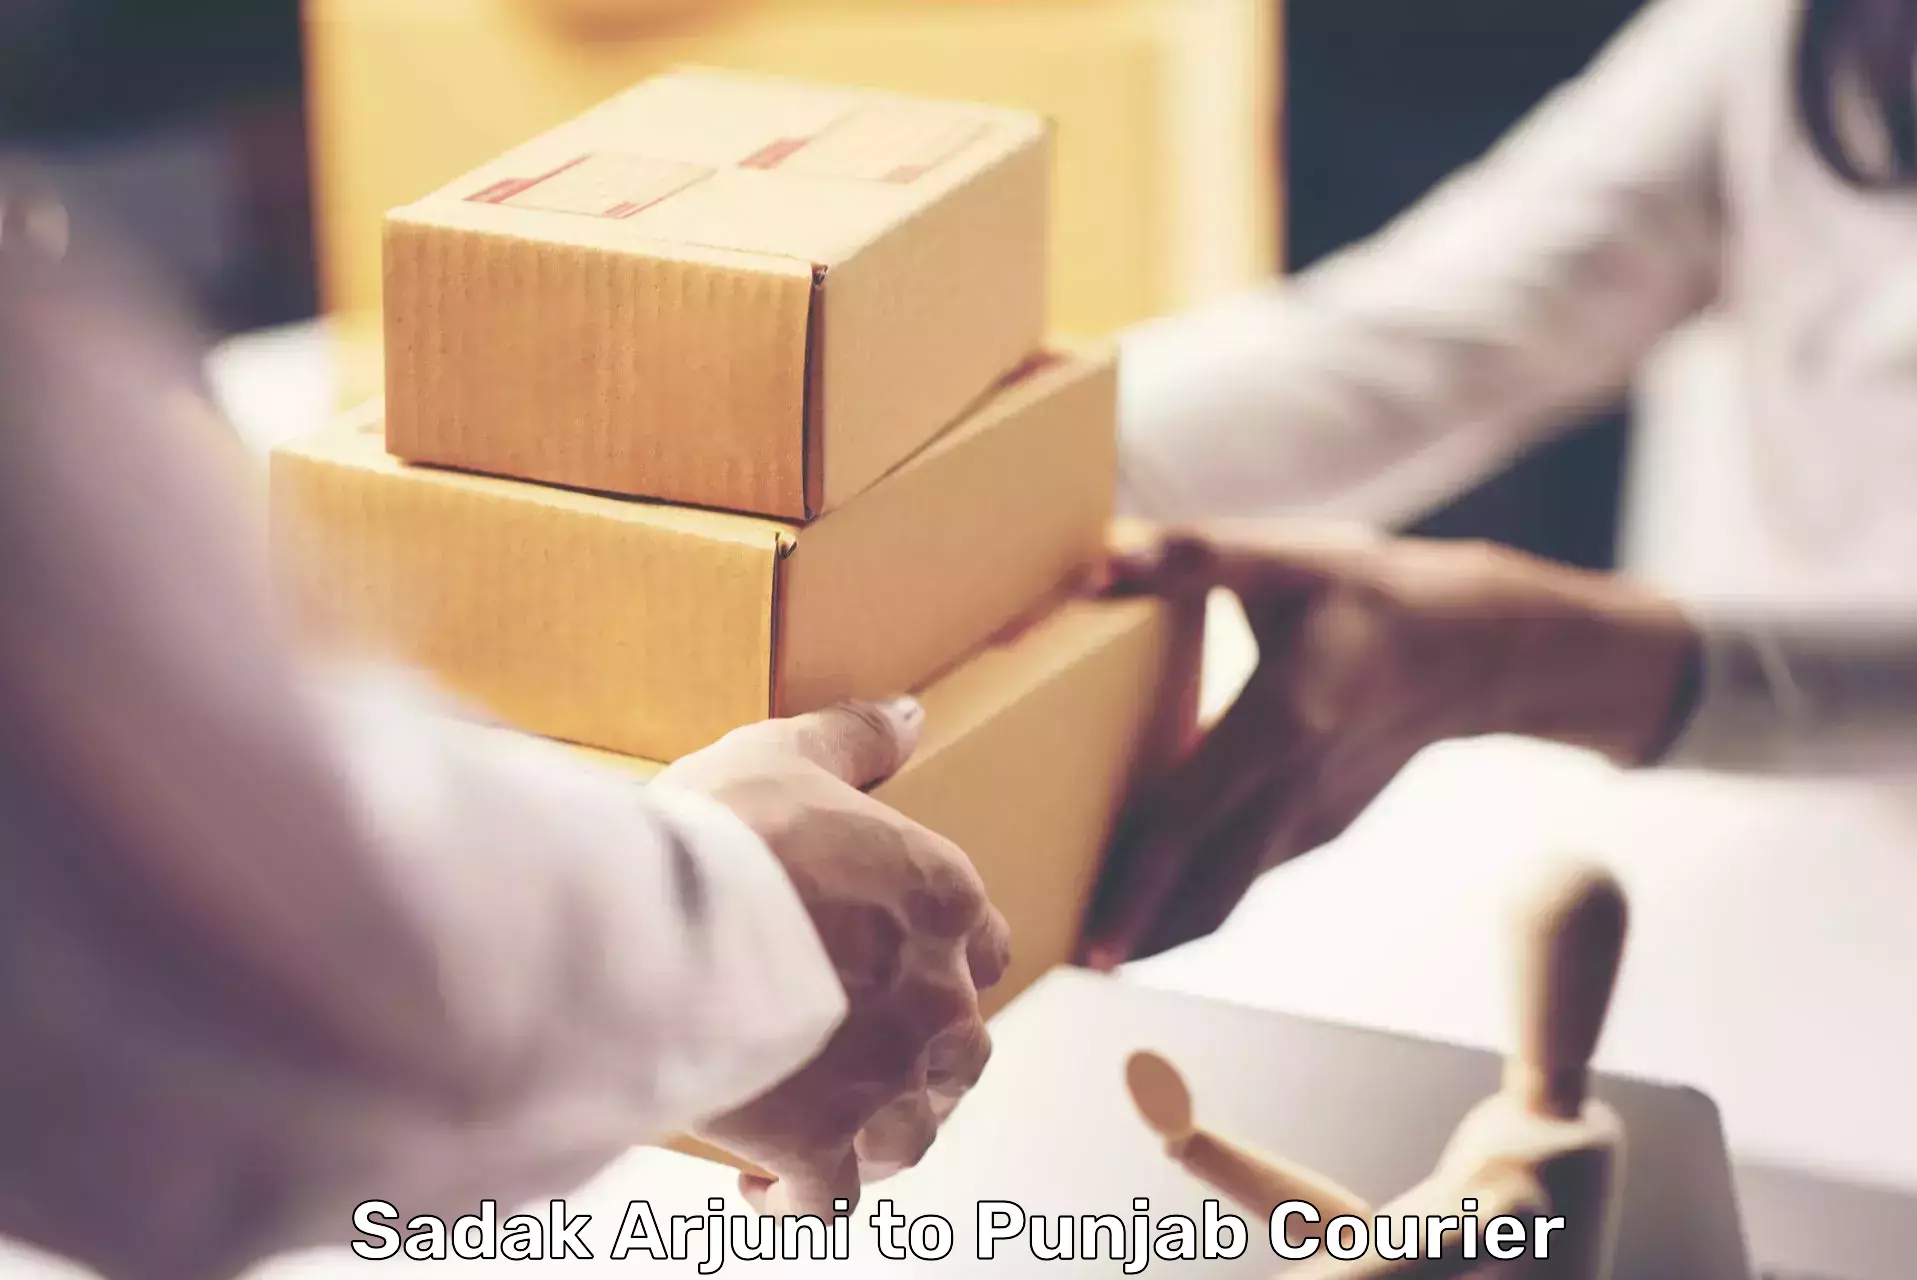 User-friendly delivery service Sadak Arjuni to Sunam